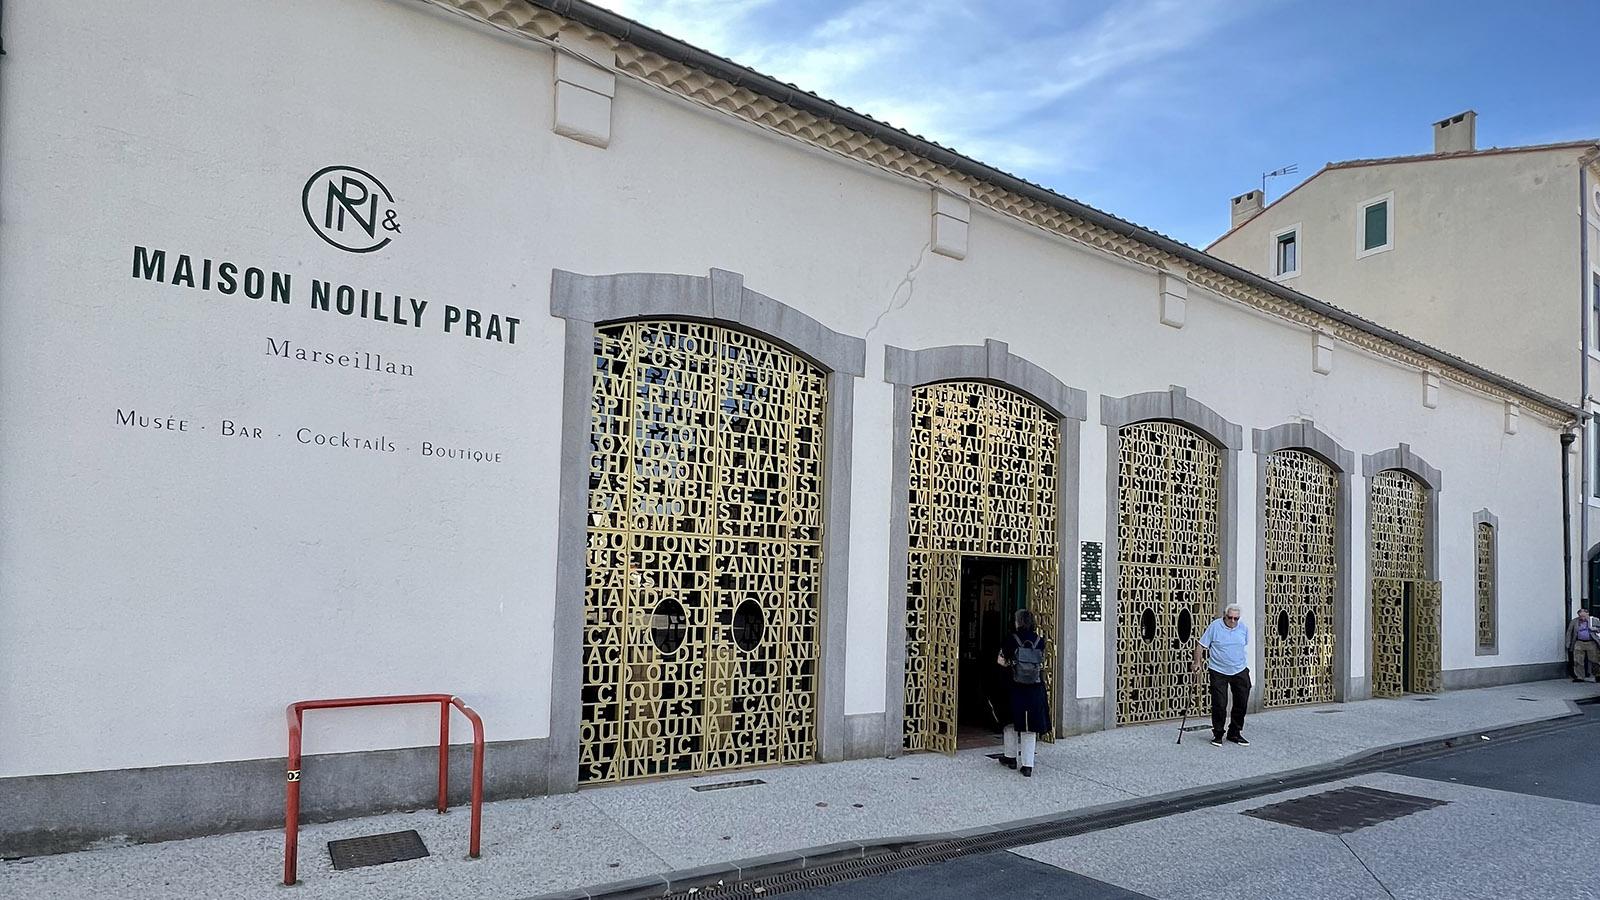 Die Maison Noilly Prat in Marseillan. Foto: Jochen Krautheim